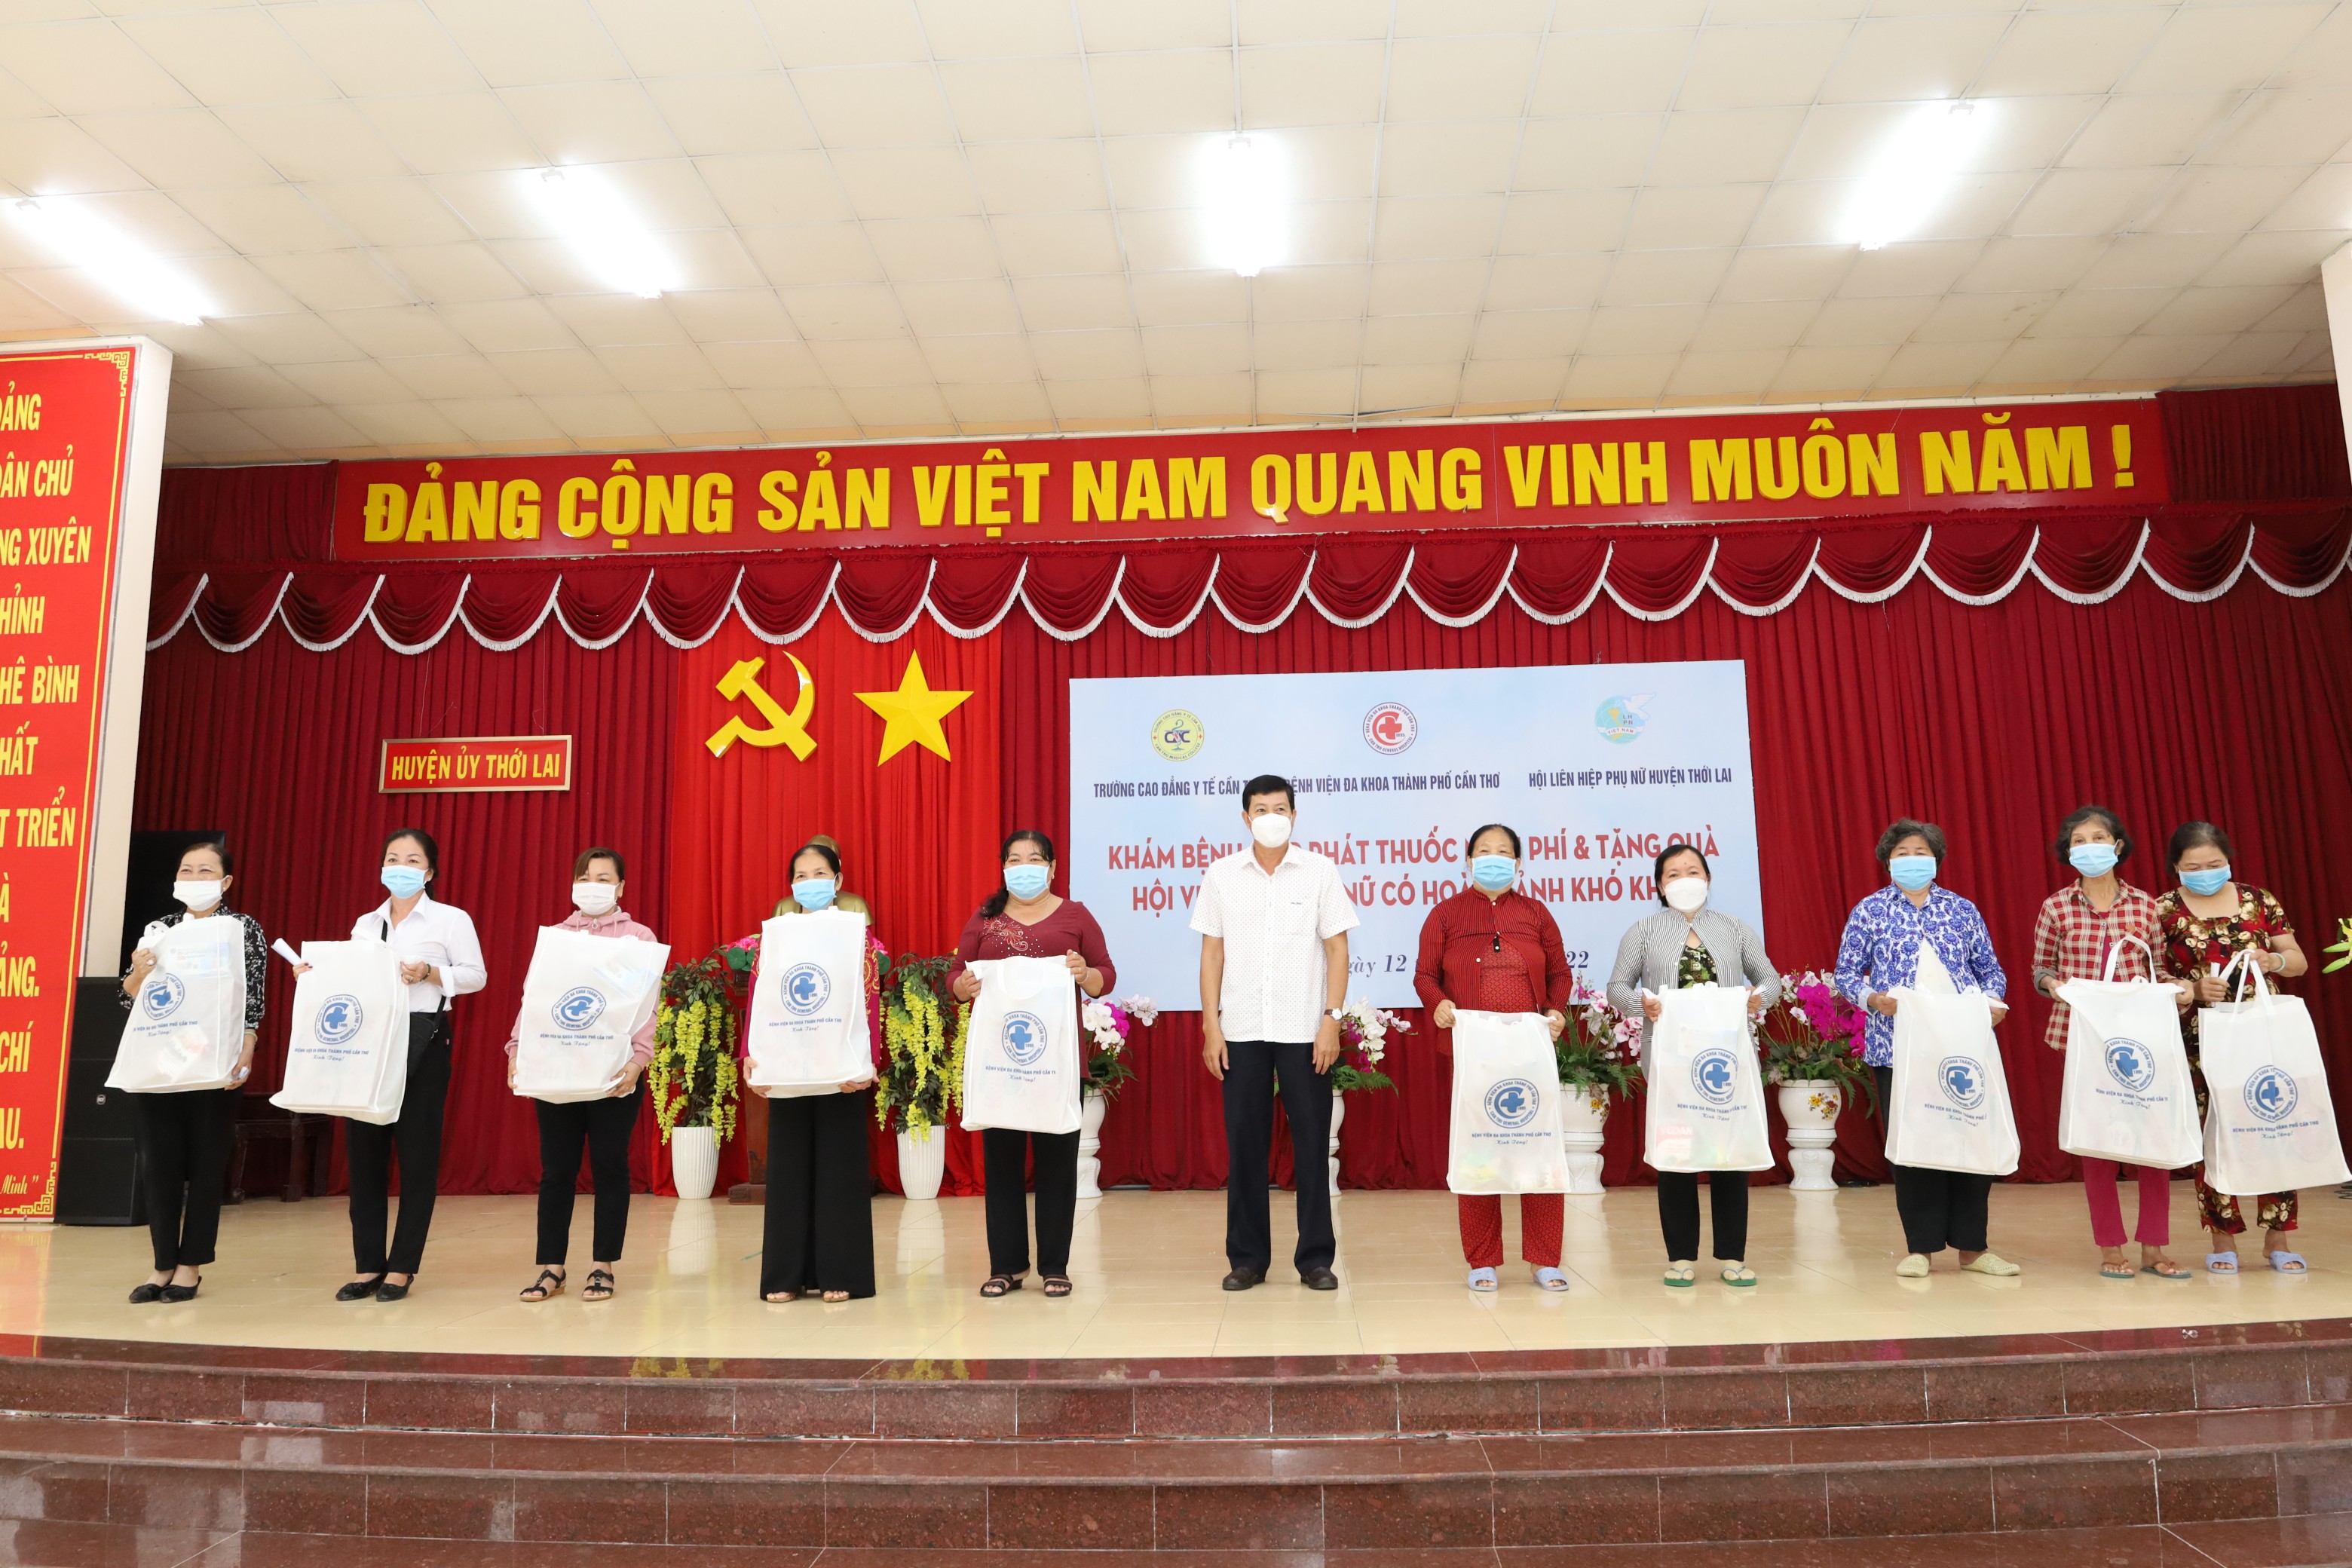 Ông Nguyễn Văn Phong – Thành ủy viên, Bí thư Huyện ủy Thới Lai trao tặng quà cho người dân.